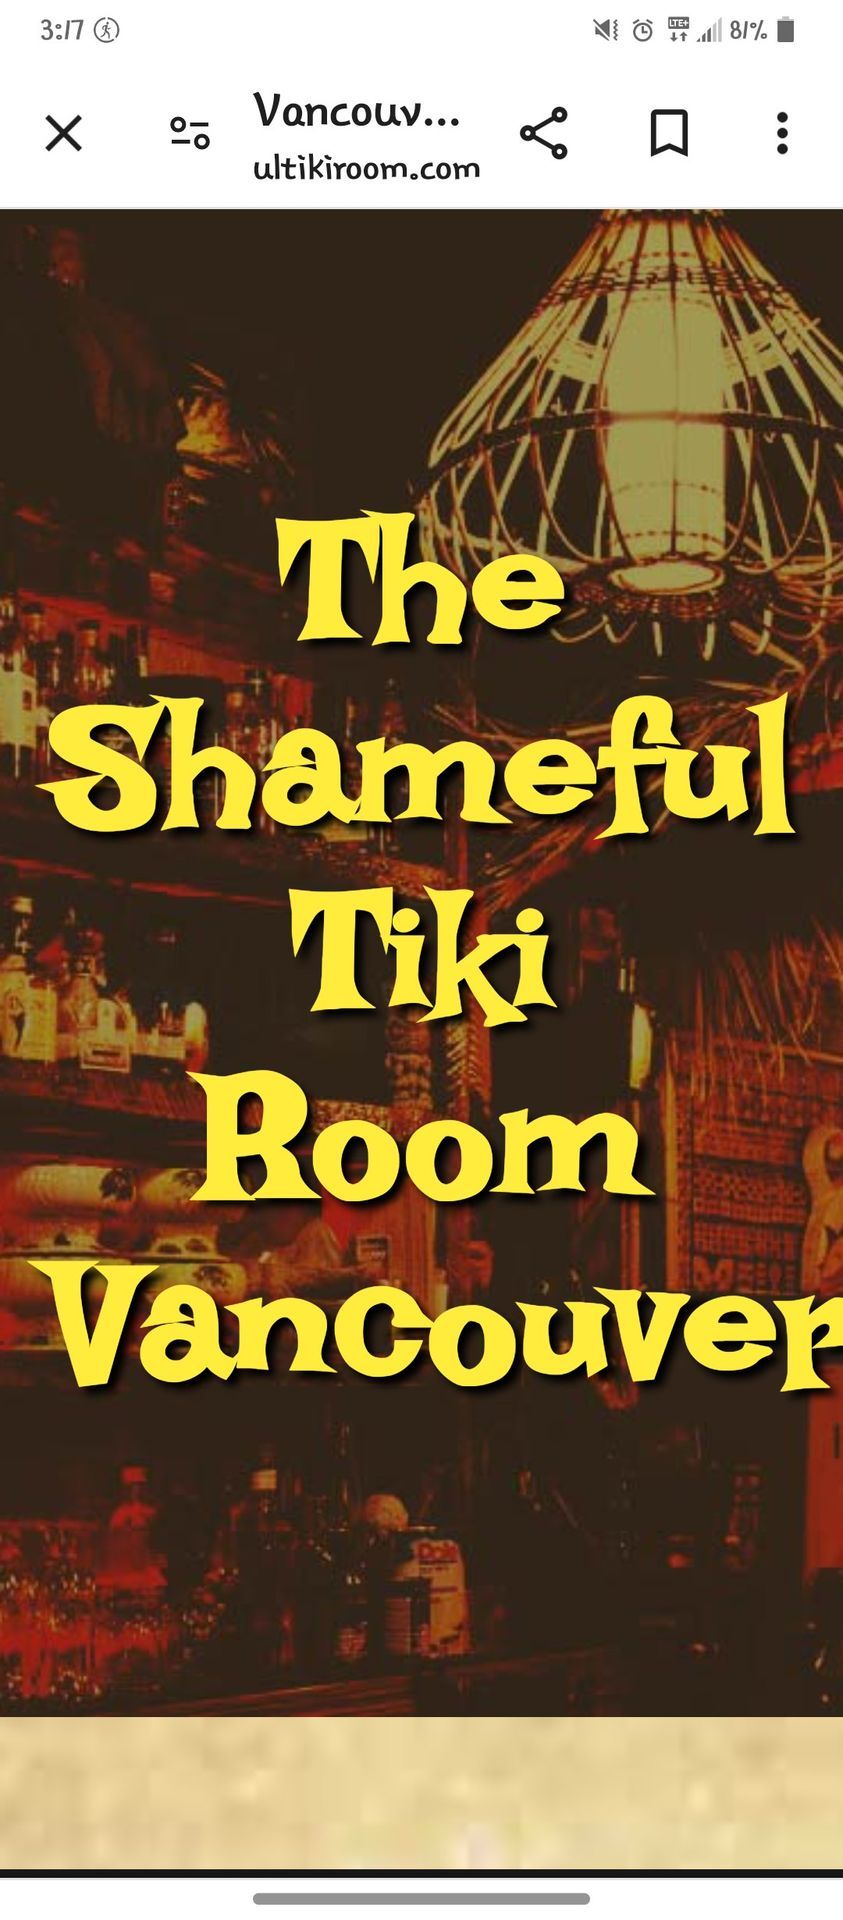 Shameless Tiki room Show!\ud83d\udc83